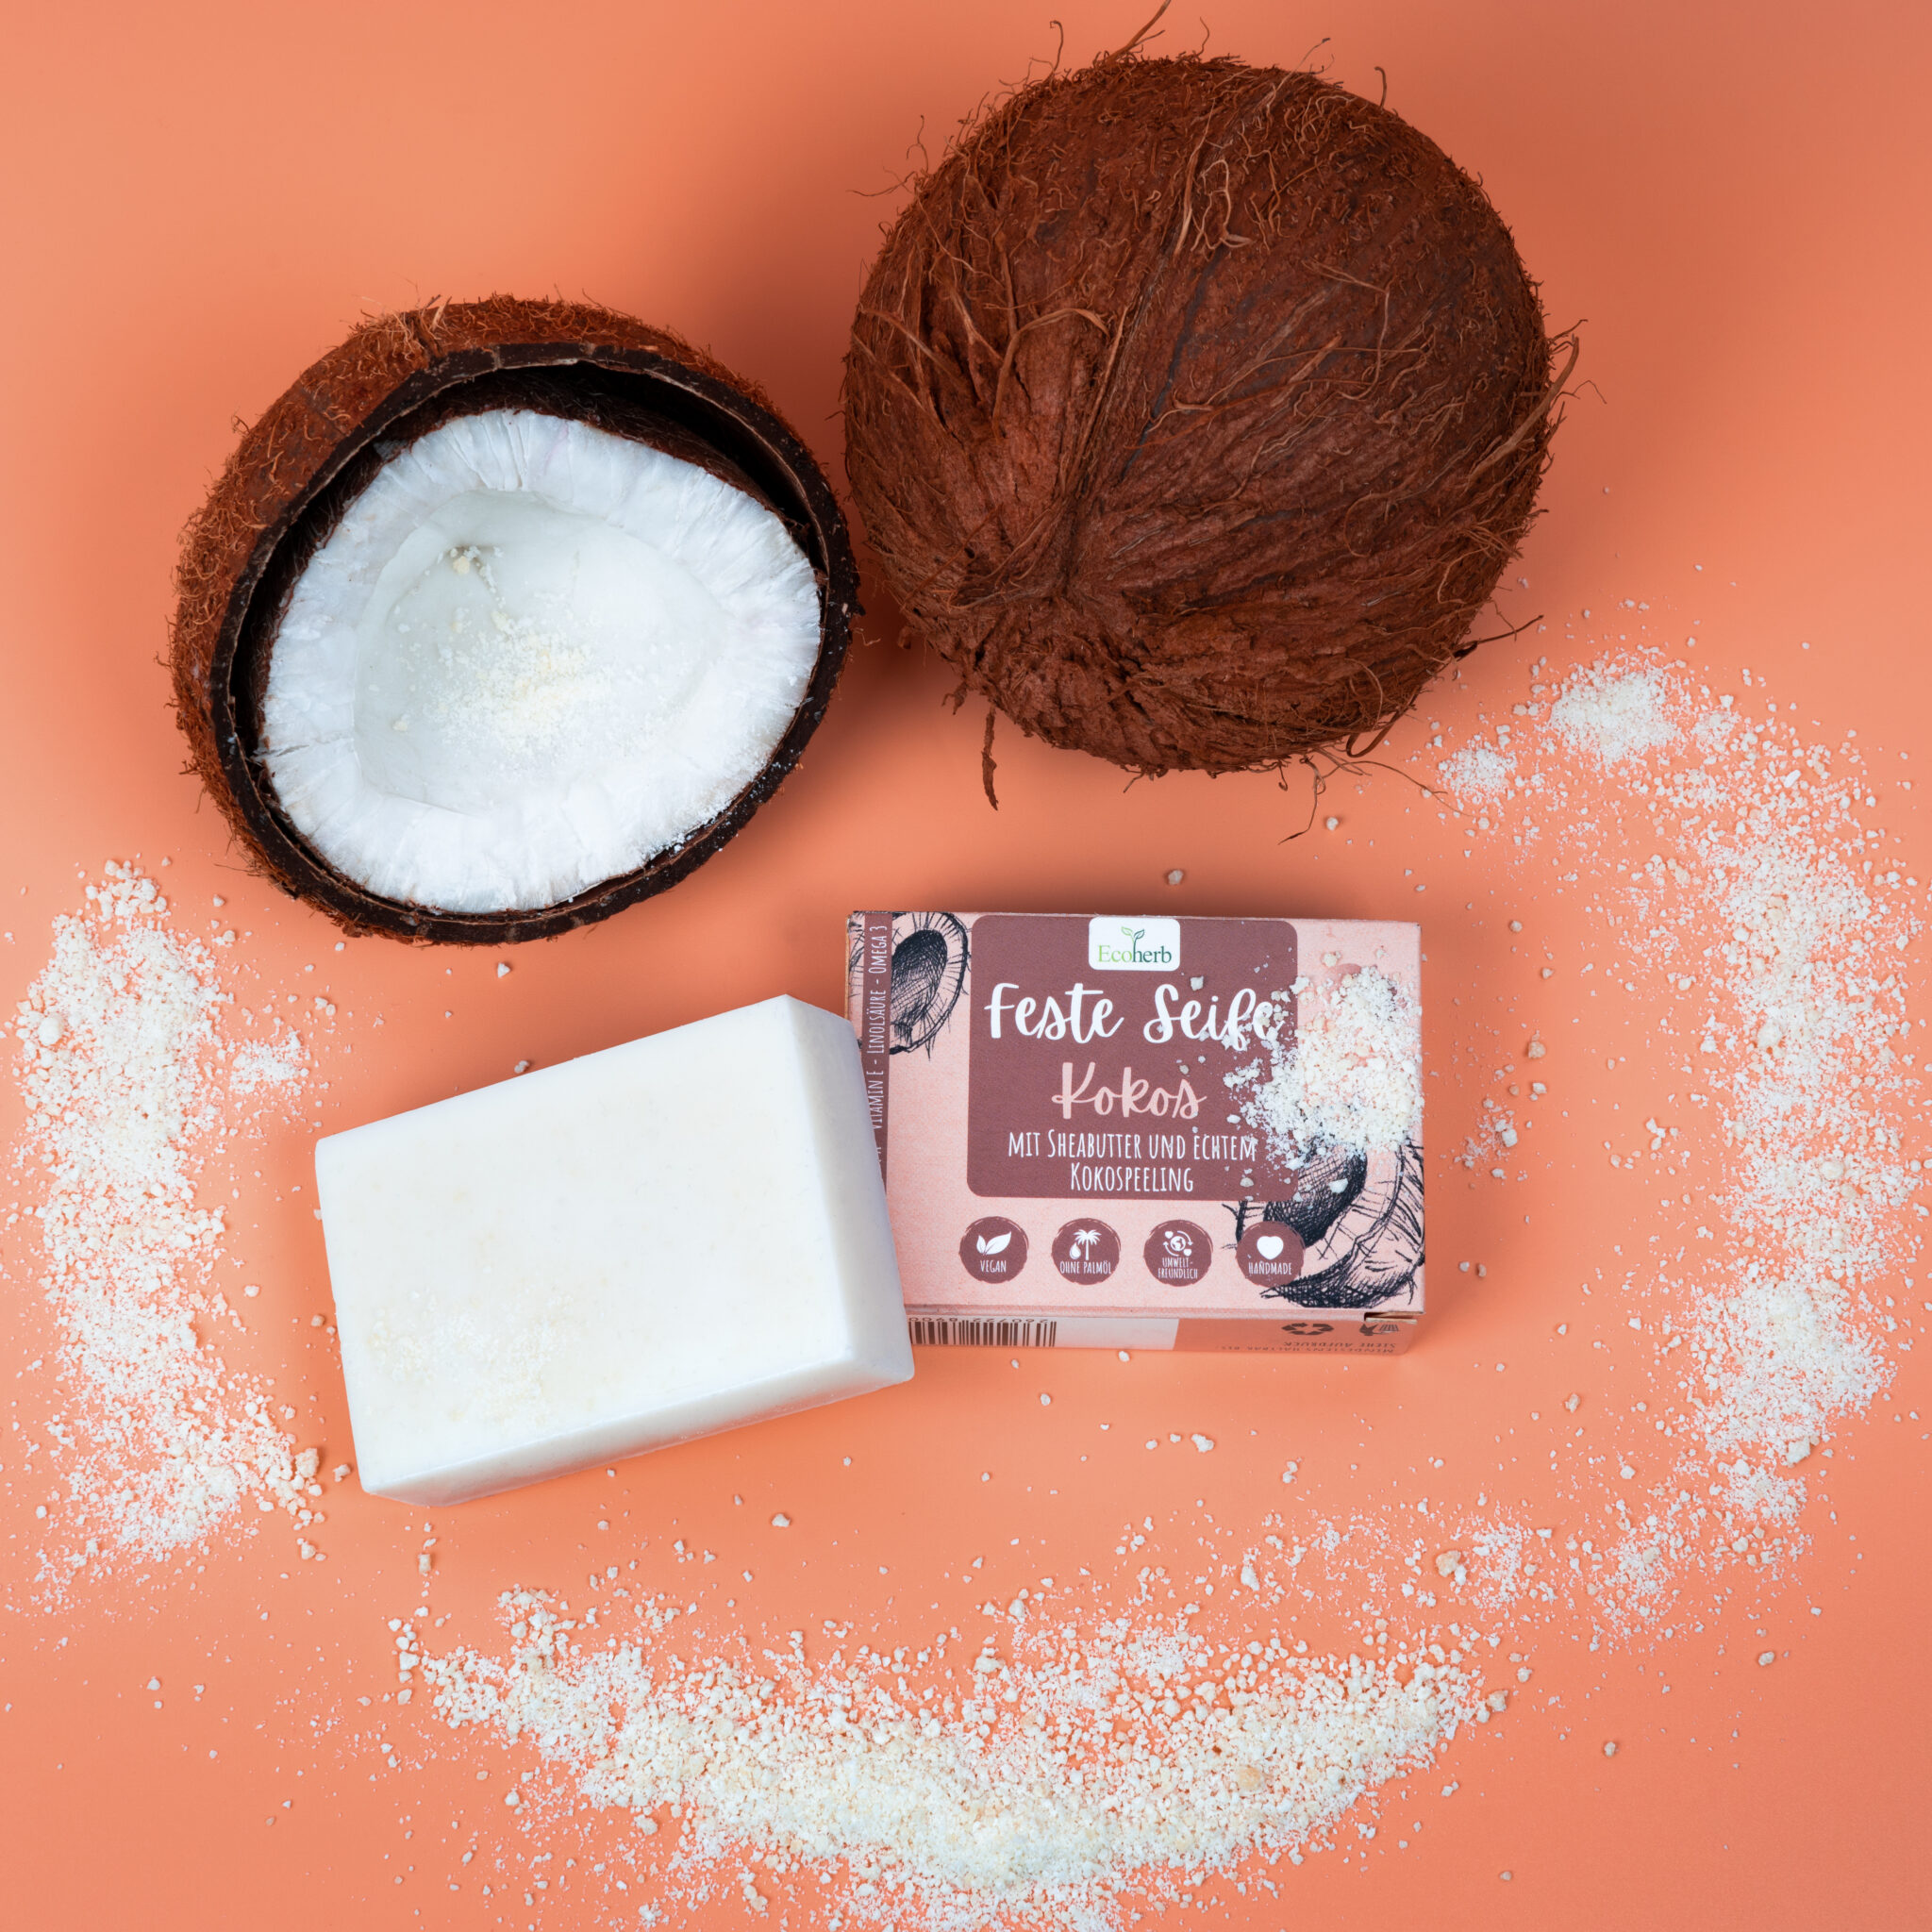 Produktfotografie, Verpackung von Fester Seife mit Kokos von Ecoherb auf orangem Untergrund mit Kokosnüssen